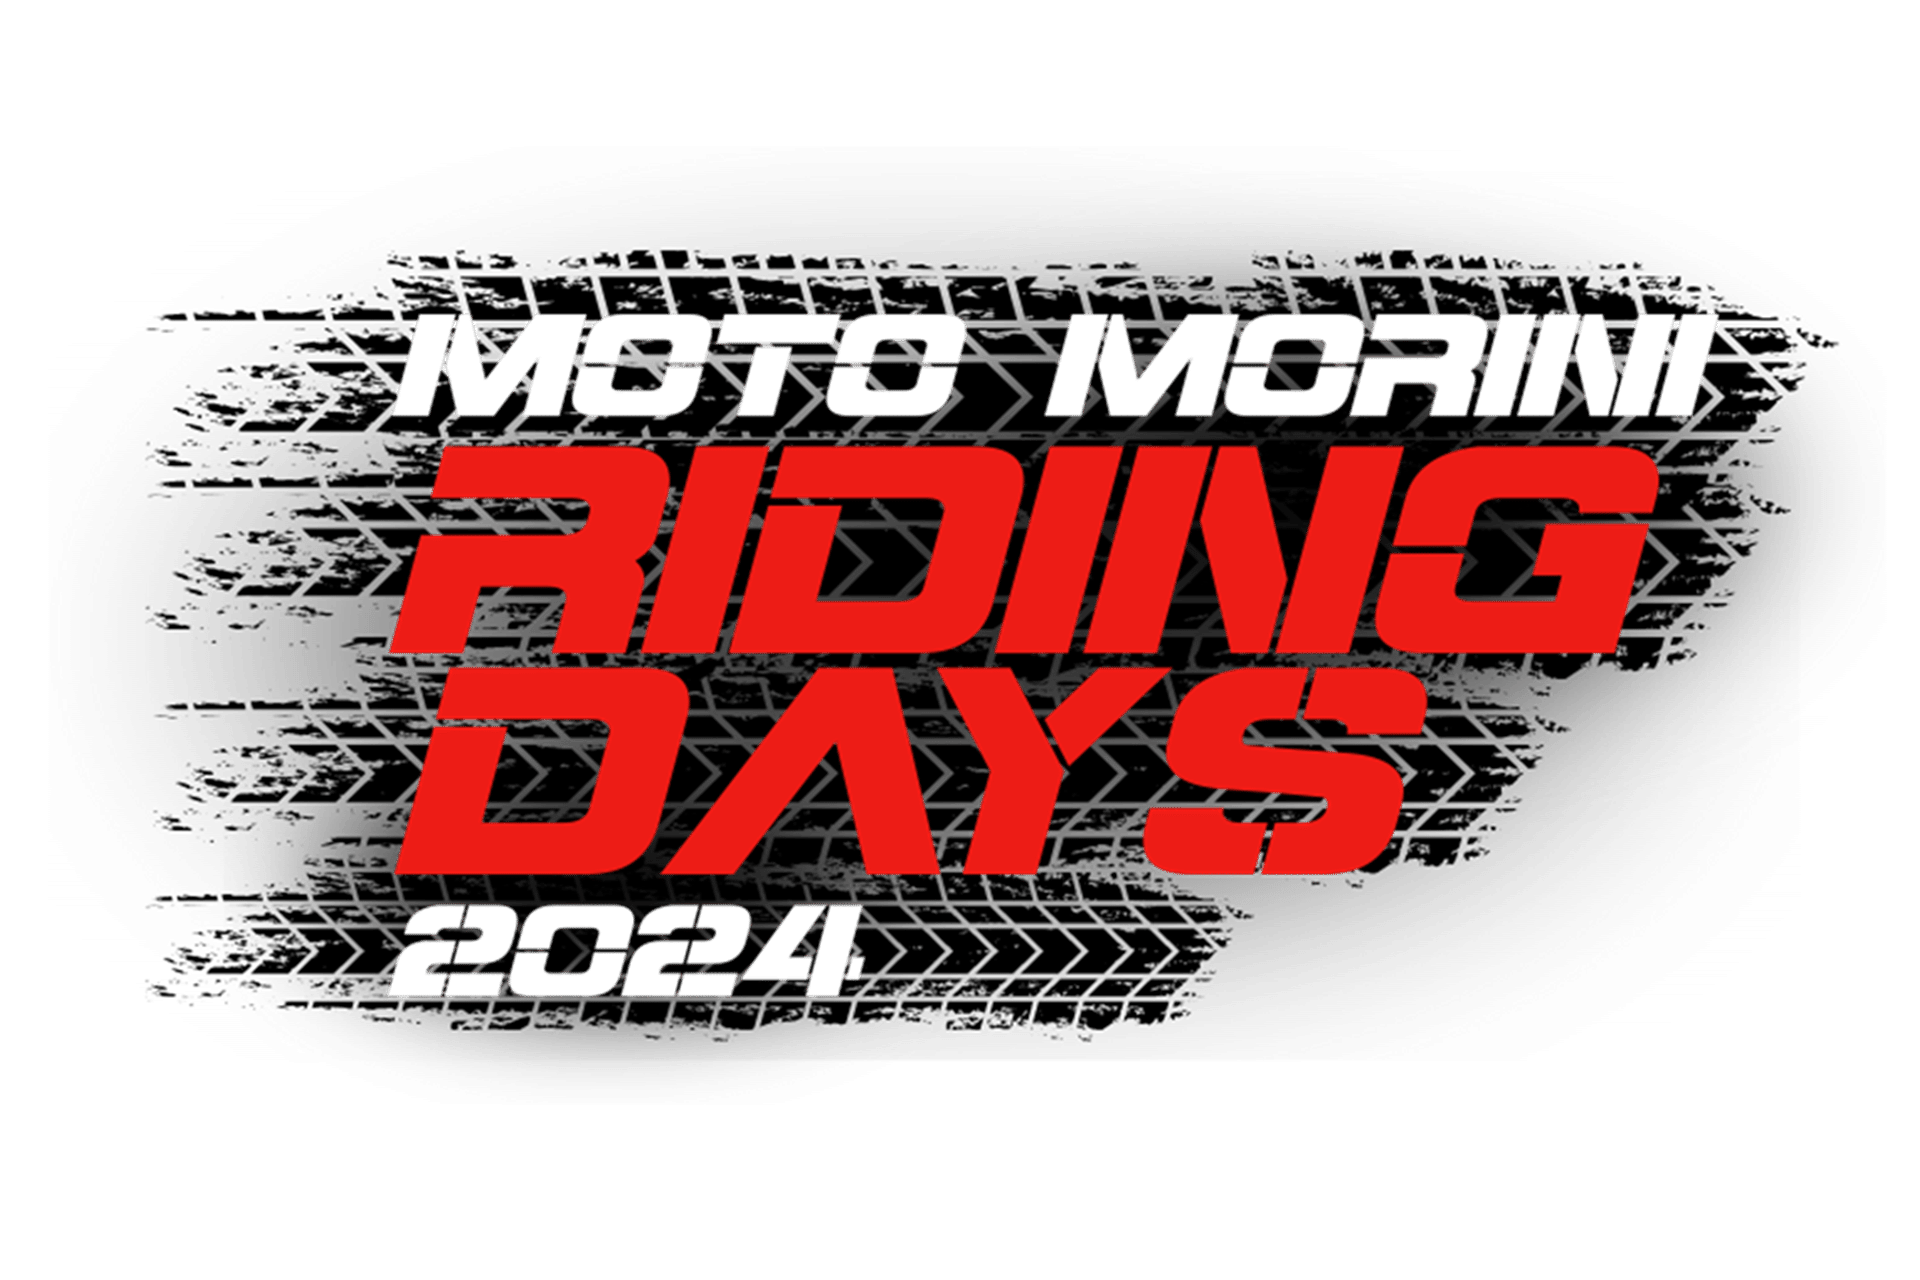 Moto Morini Riding Days: La mejor forma de conocer tu futura moto